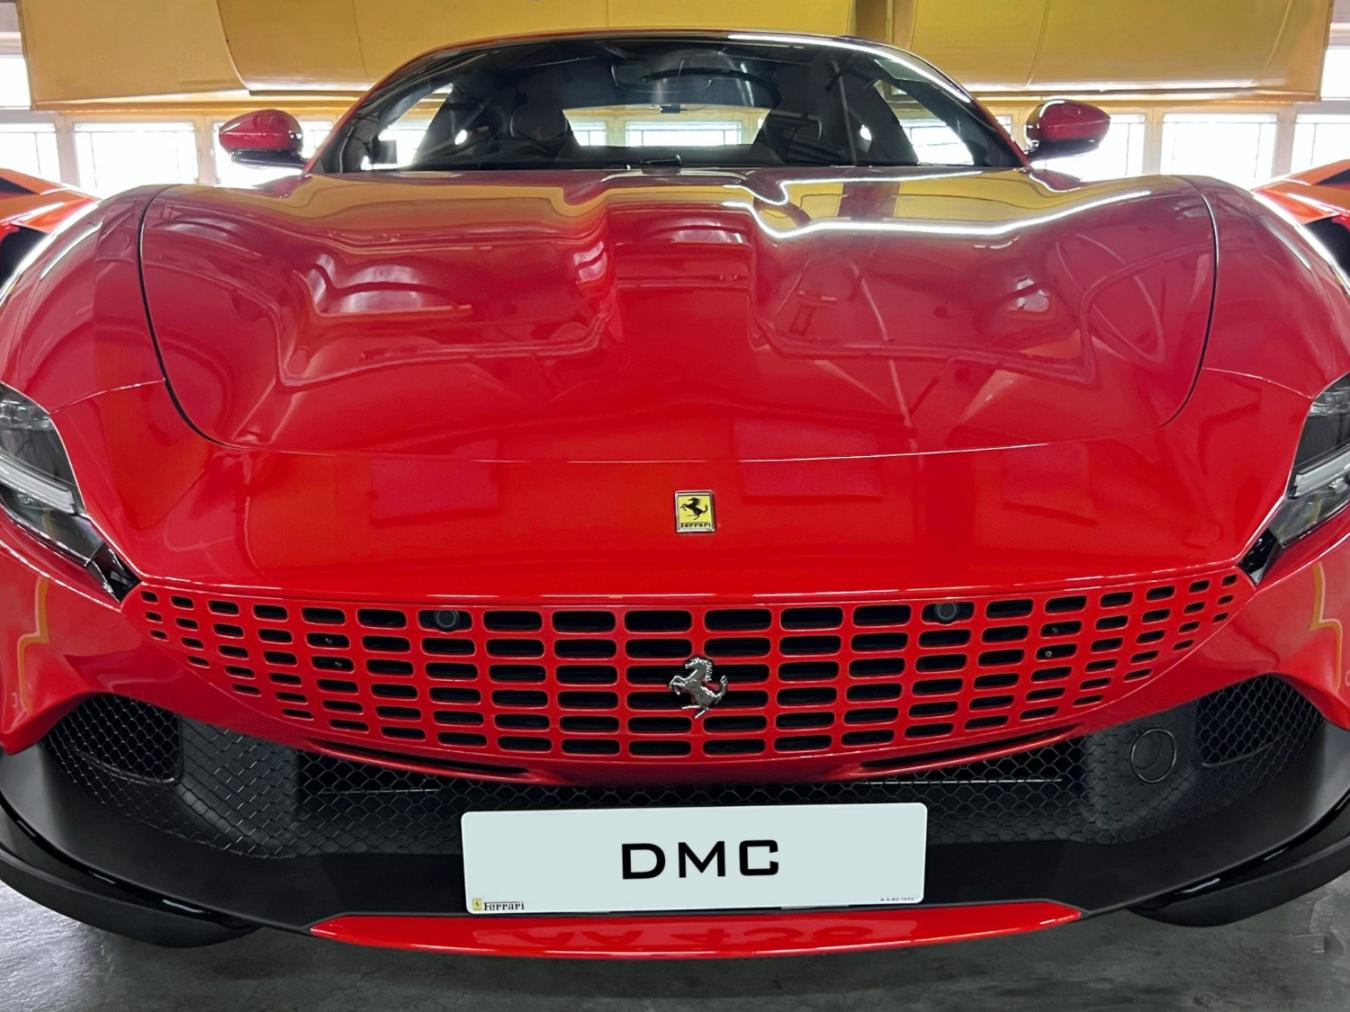 DMC为法拉利 Roma推出空气动力学套件 打造708匹马力